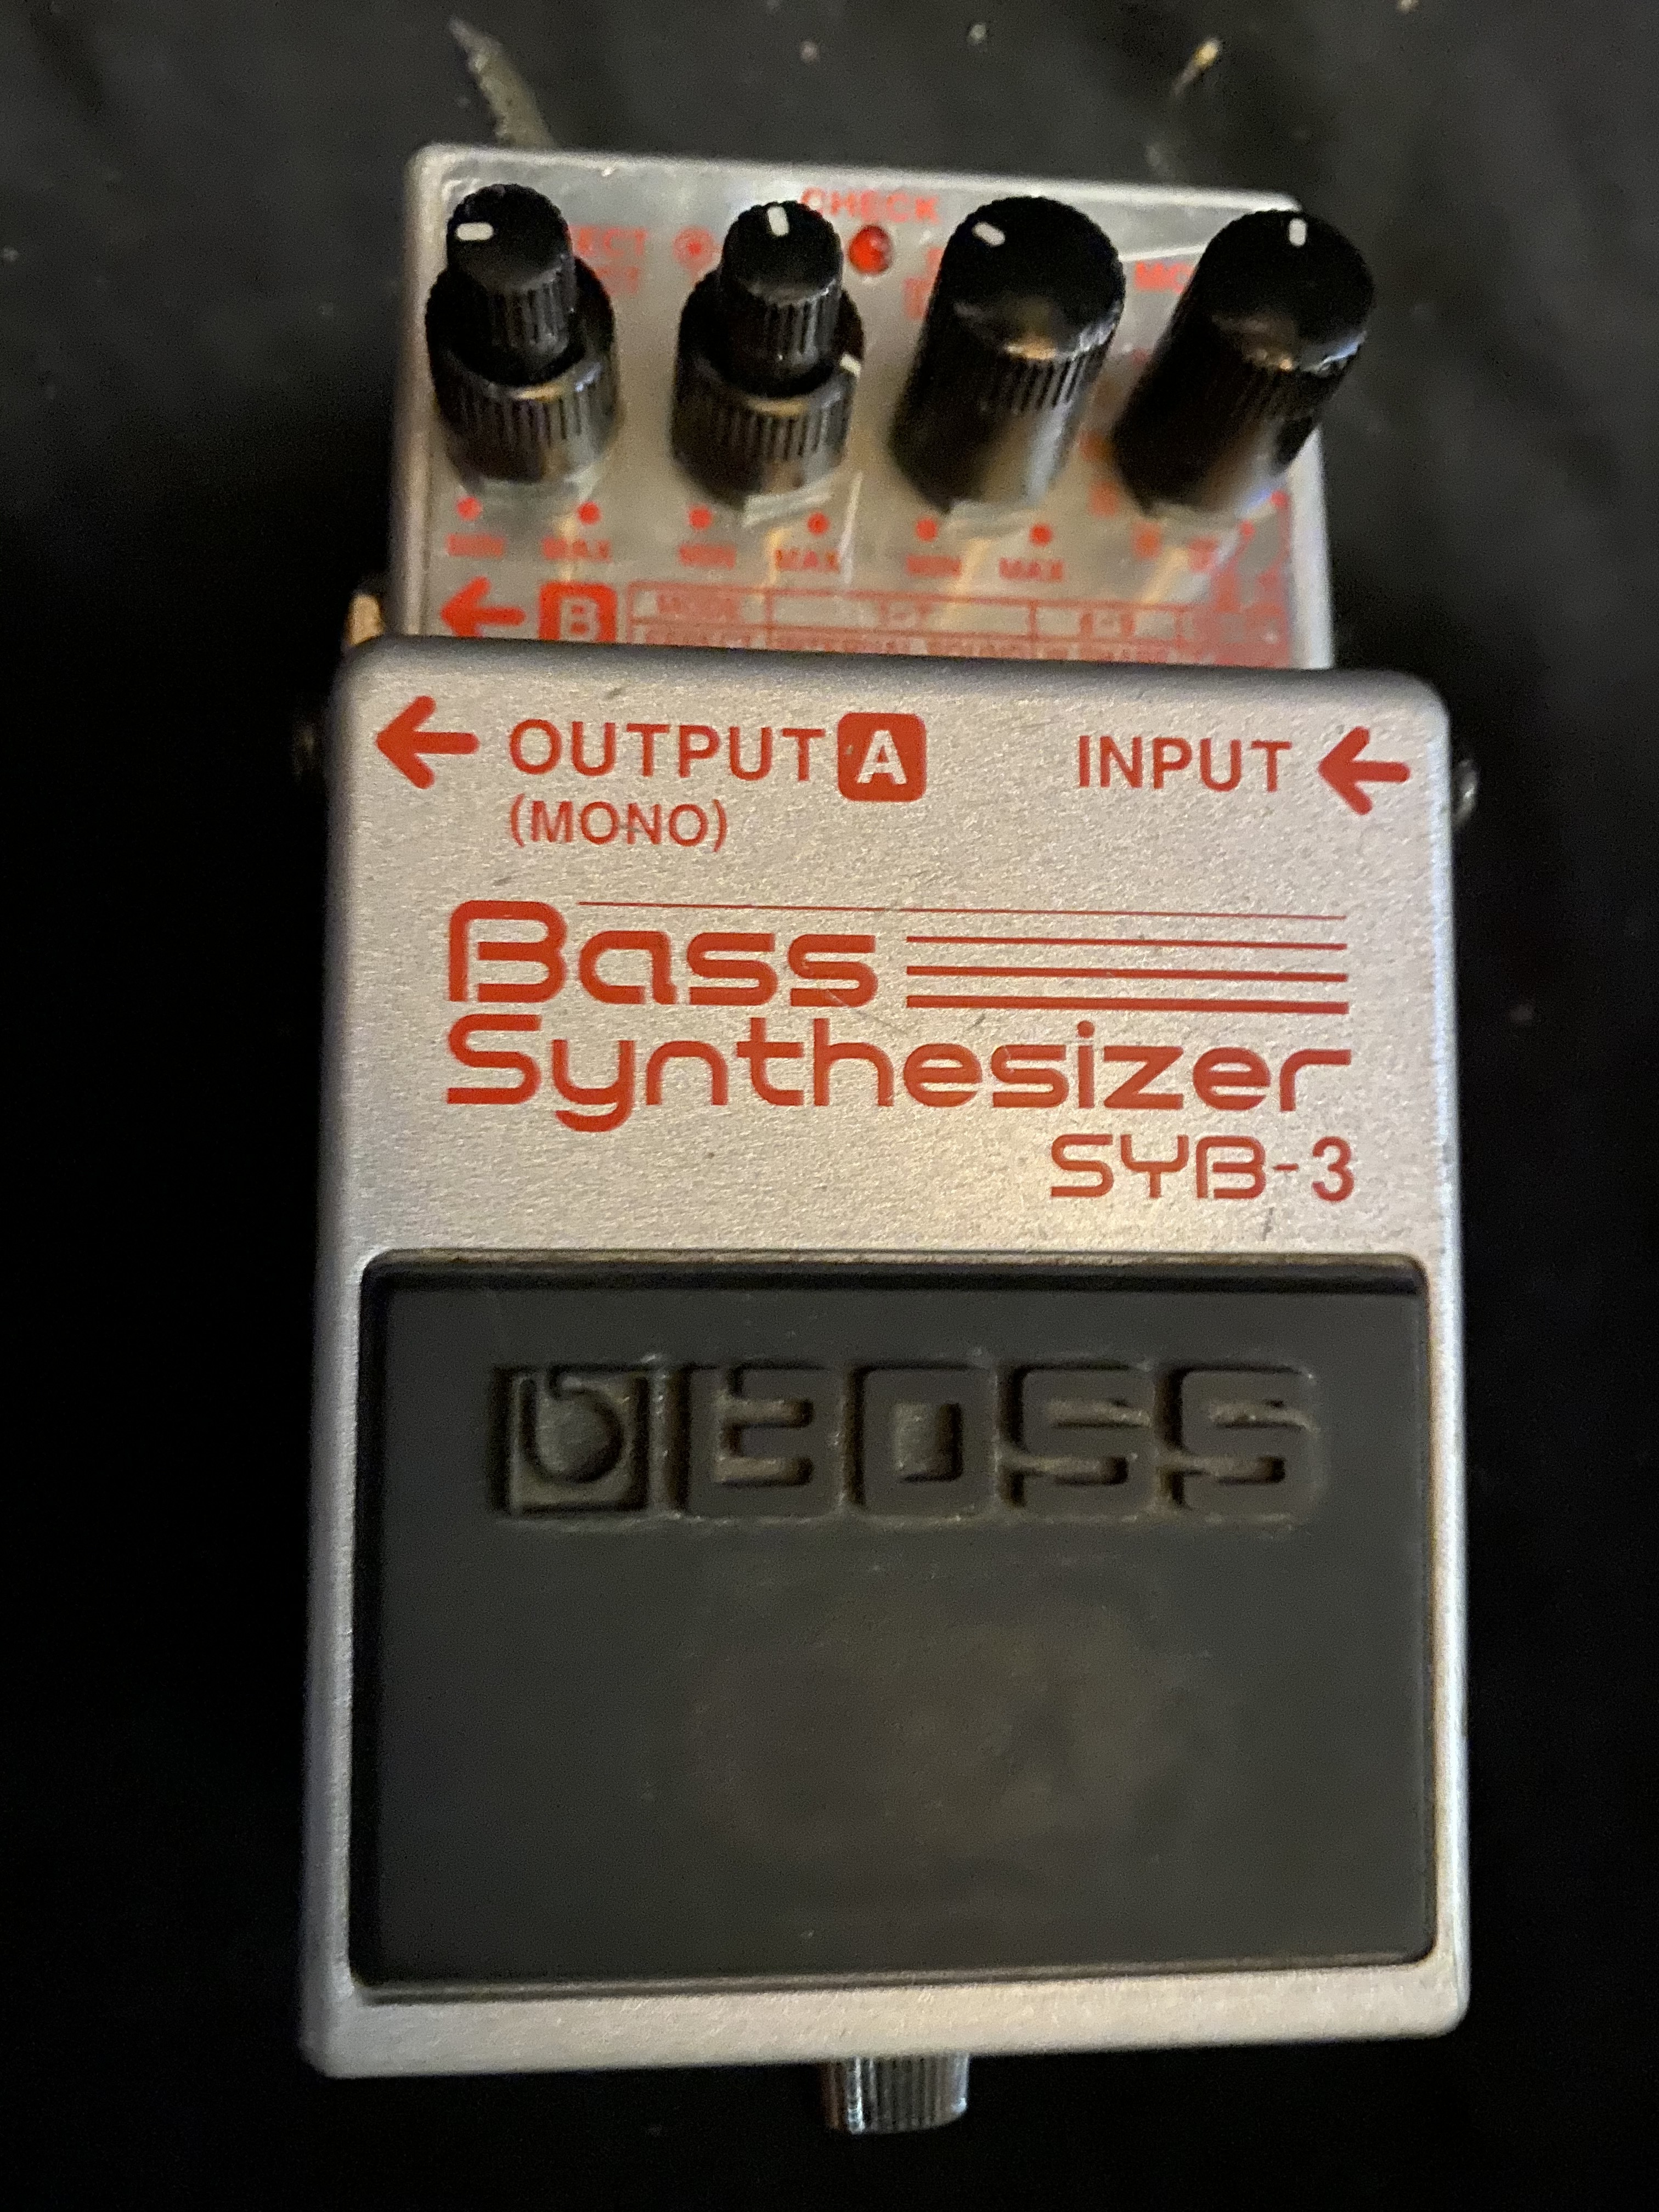 SYB-3 Bass Synthesizer - Boss SYB-3 Bass Synthesizer - Audiofanzine